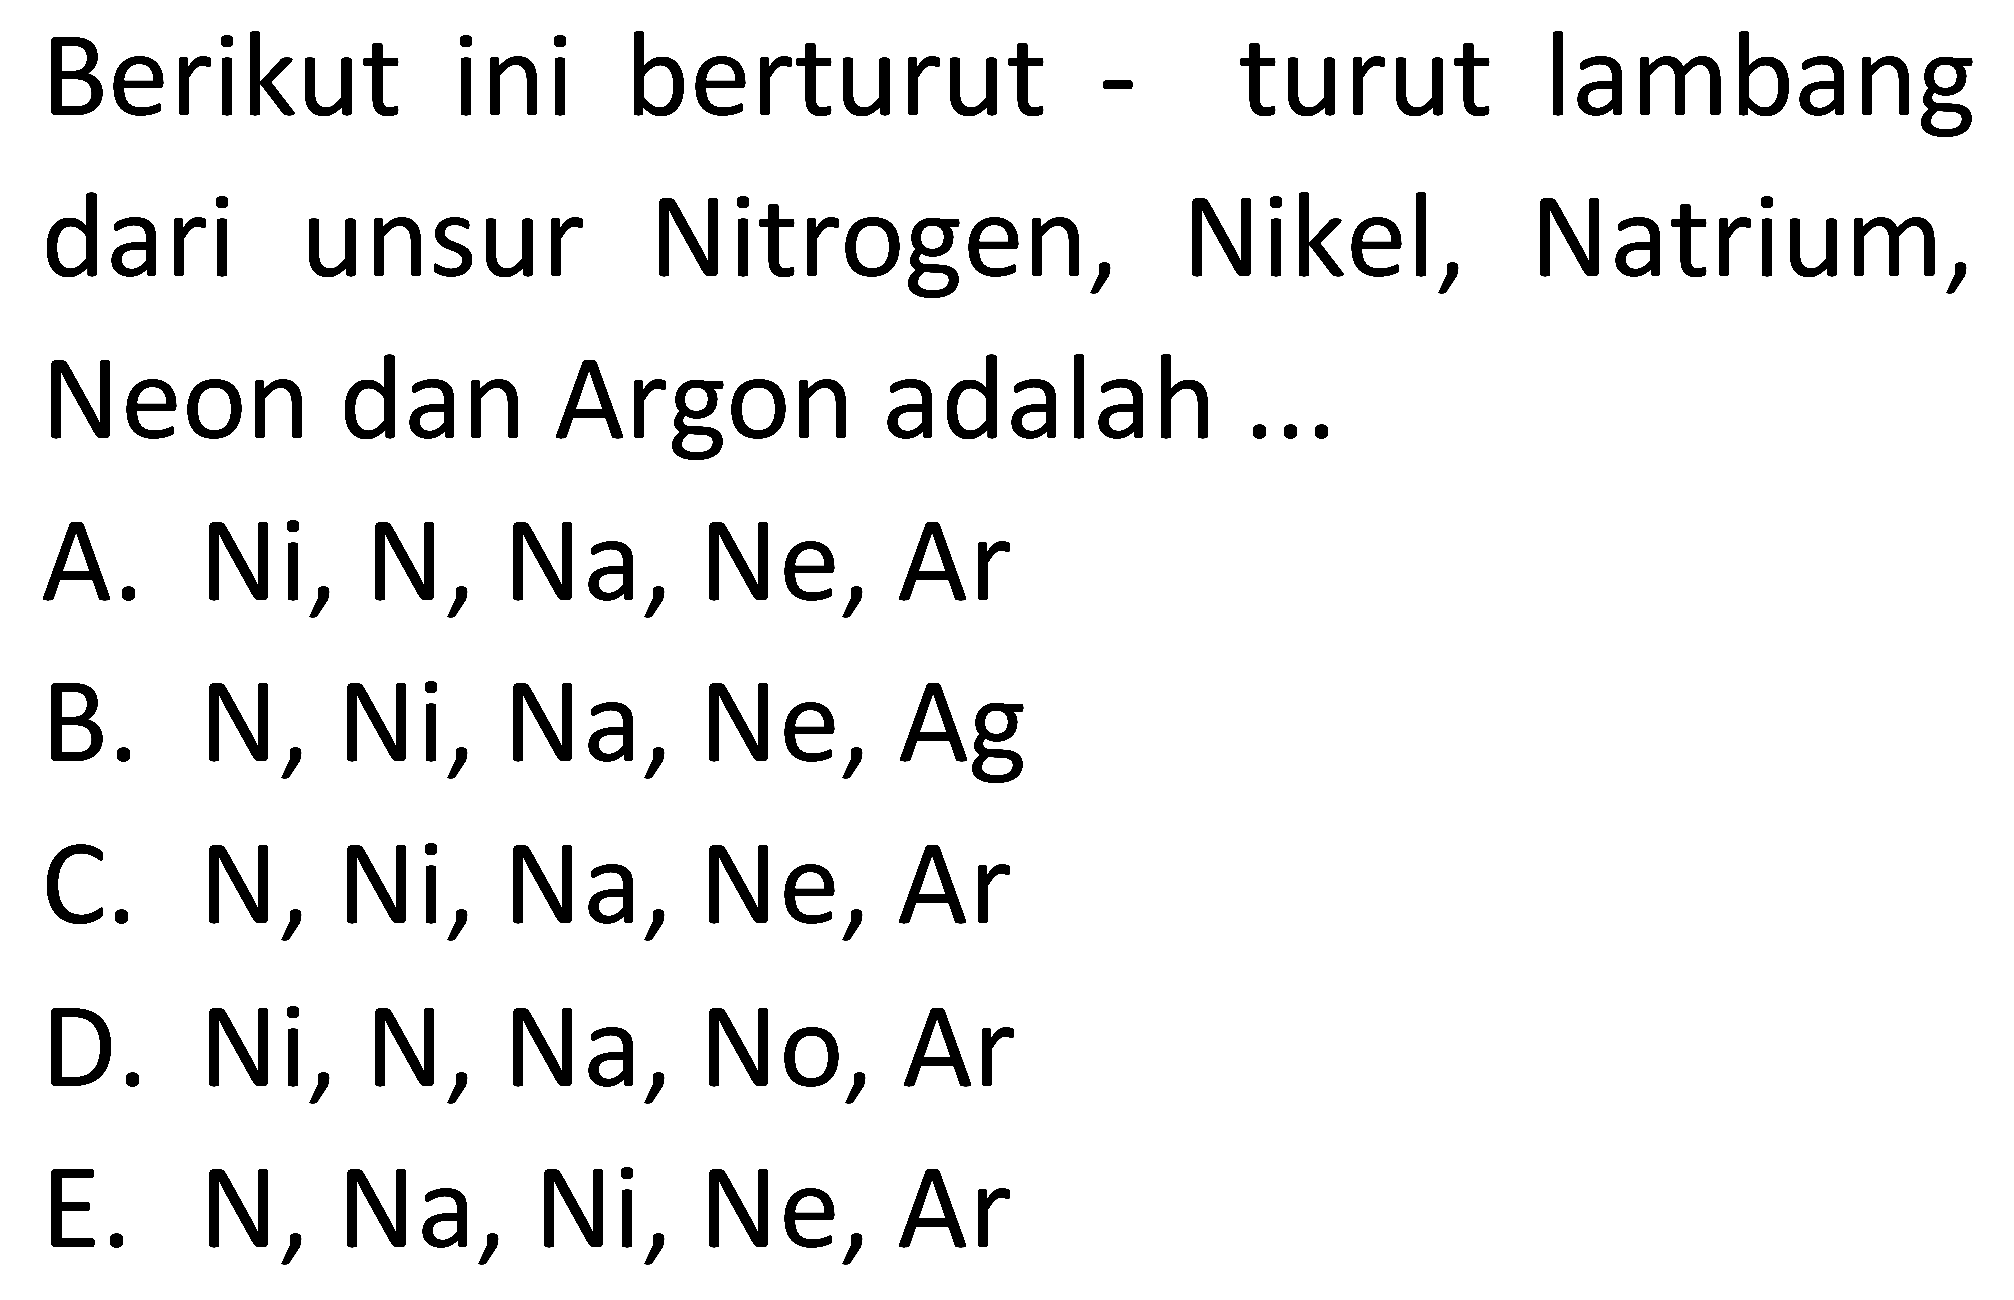 Berikut ini berturut - turut lambang dari unsur Nitrogen, Nikel, Natrium, Neon dan Argon adalah ...
A. Ni, N, Na, Ne, Ar
B. N, Ni, Na, Ne, Ag
C. N, Ni, Na, Ne, Ar 
D. Ni, N, Na, No, Ar 
E. N, Na, Ni, Ne, Ar 